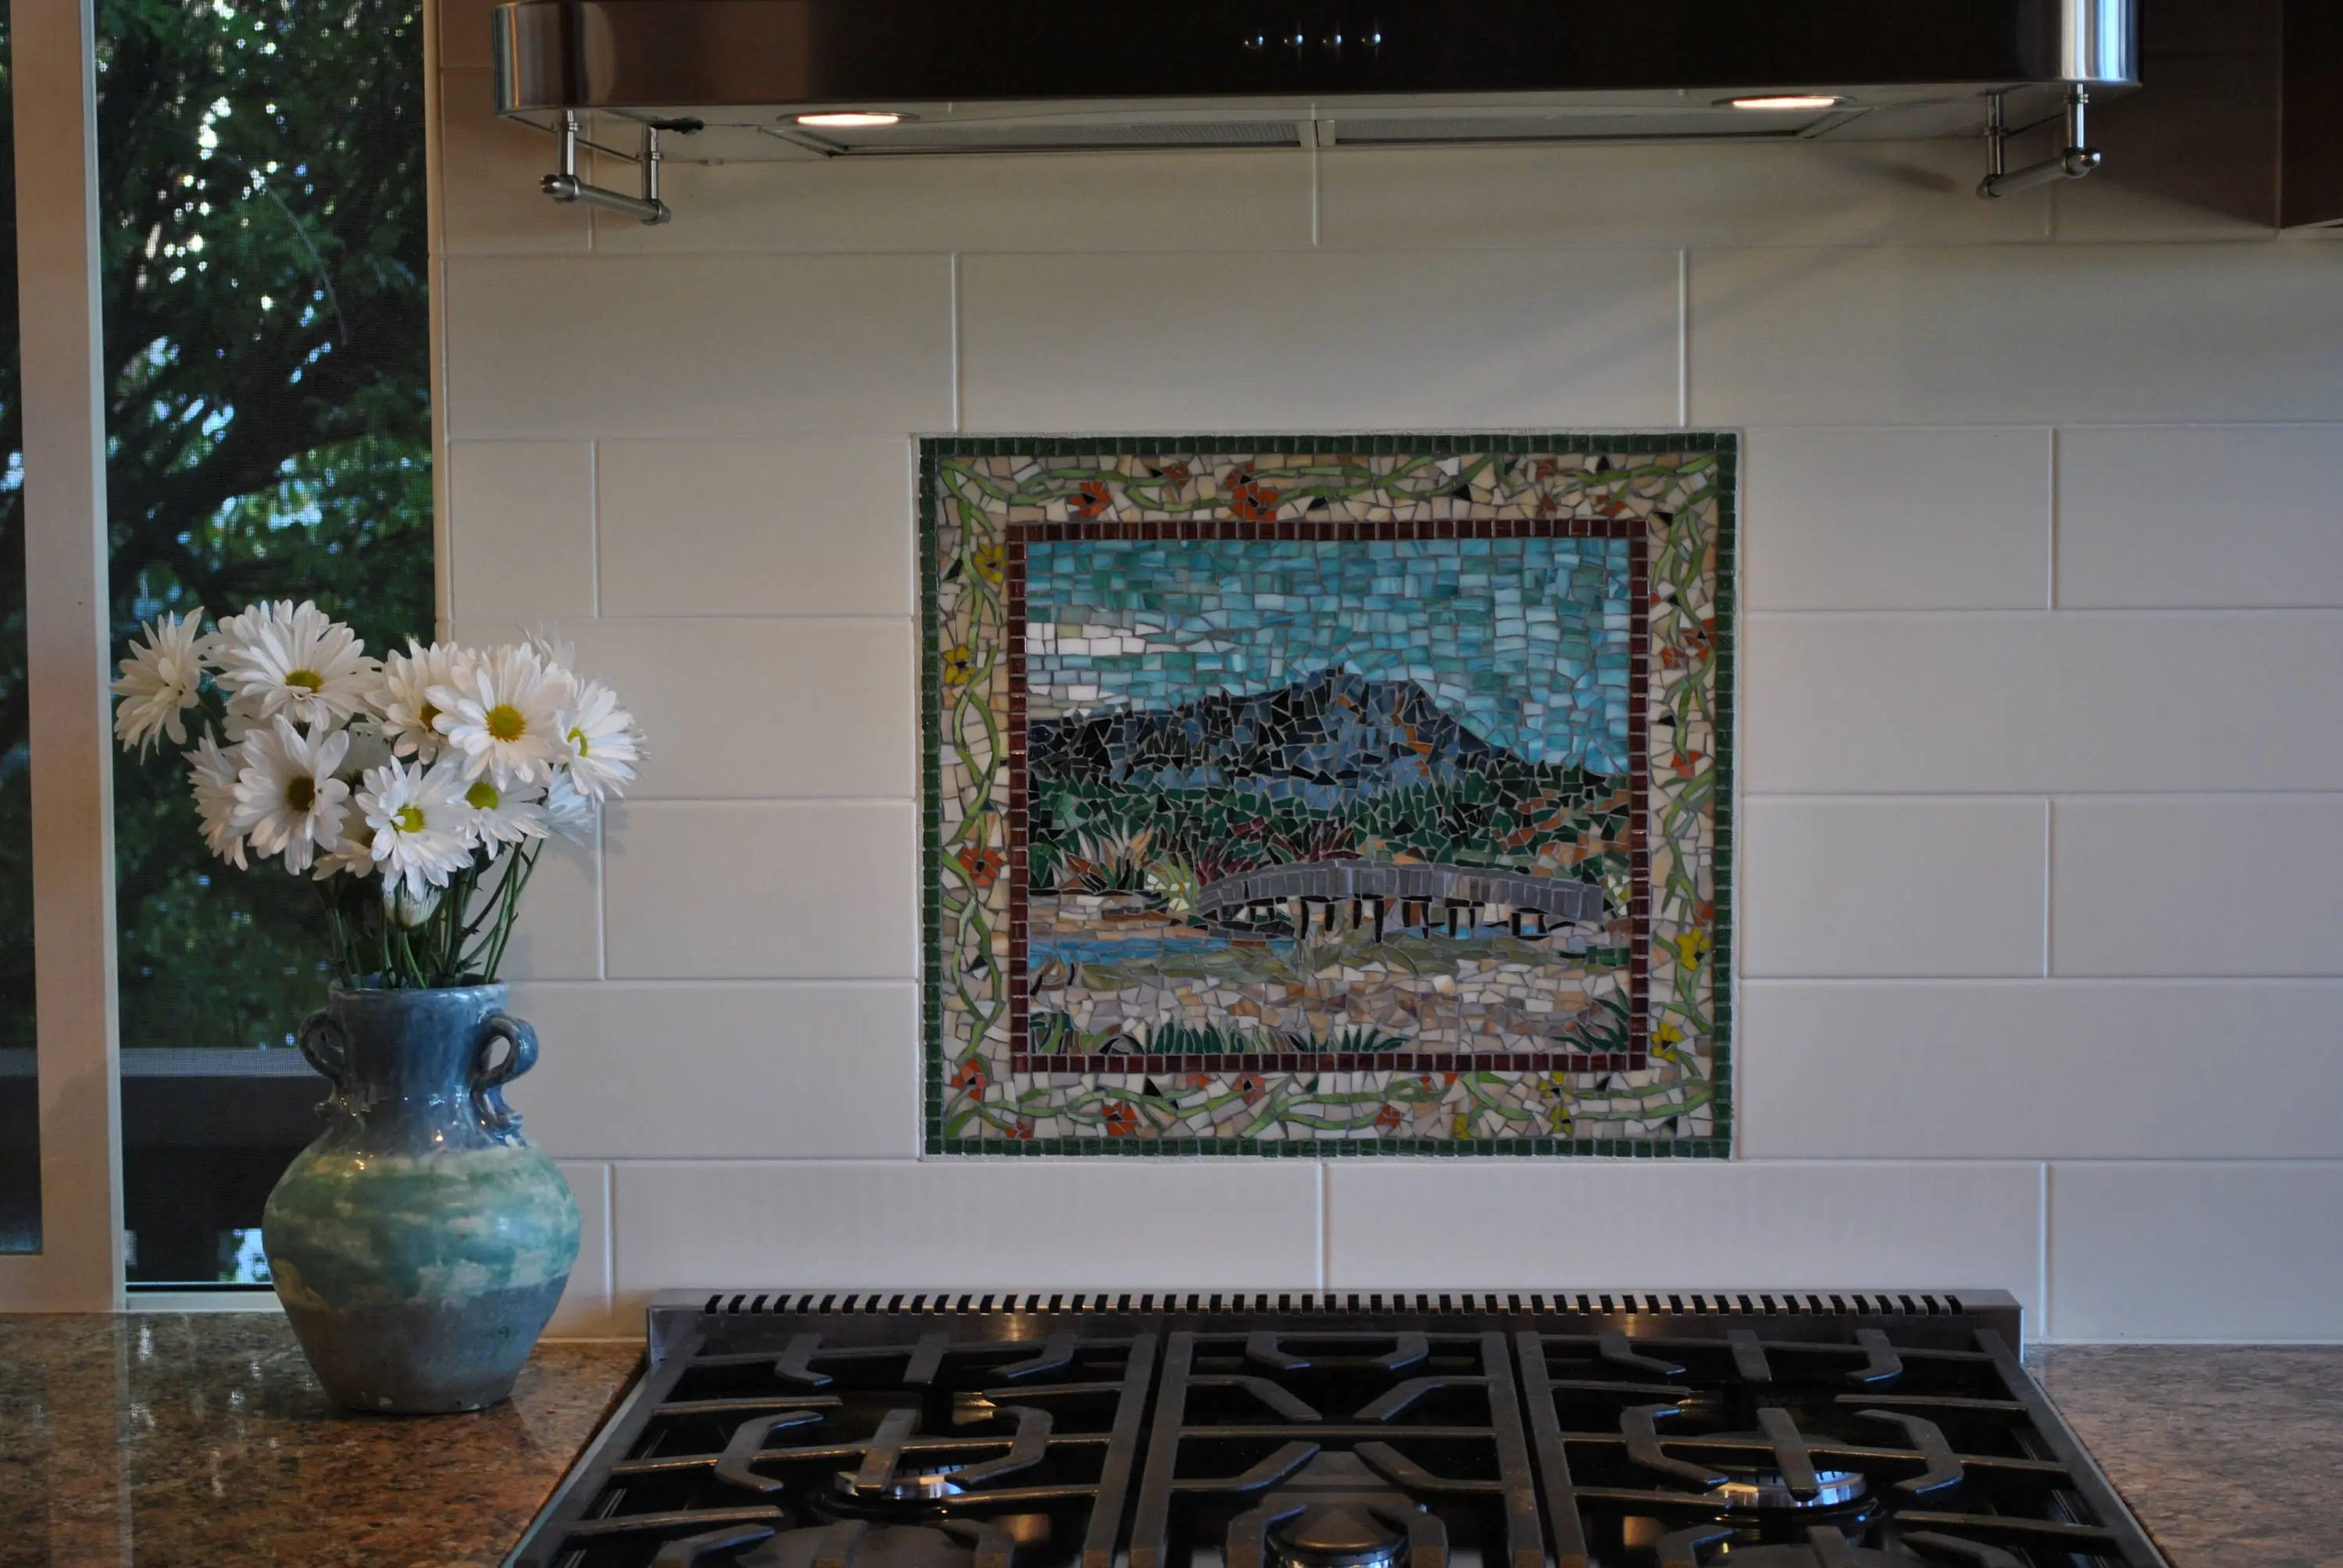 
Multi-pattern Shower Room Kitchen Wall Tile Design Ceramic Art Mosaic Mural Tile 